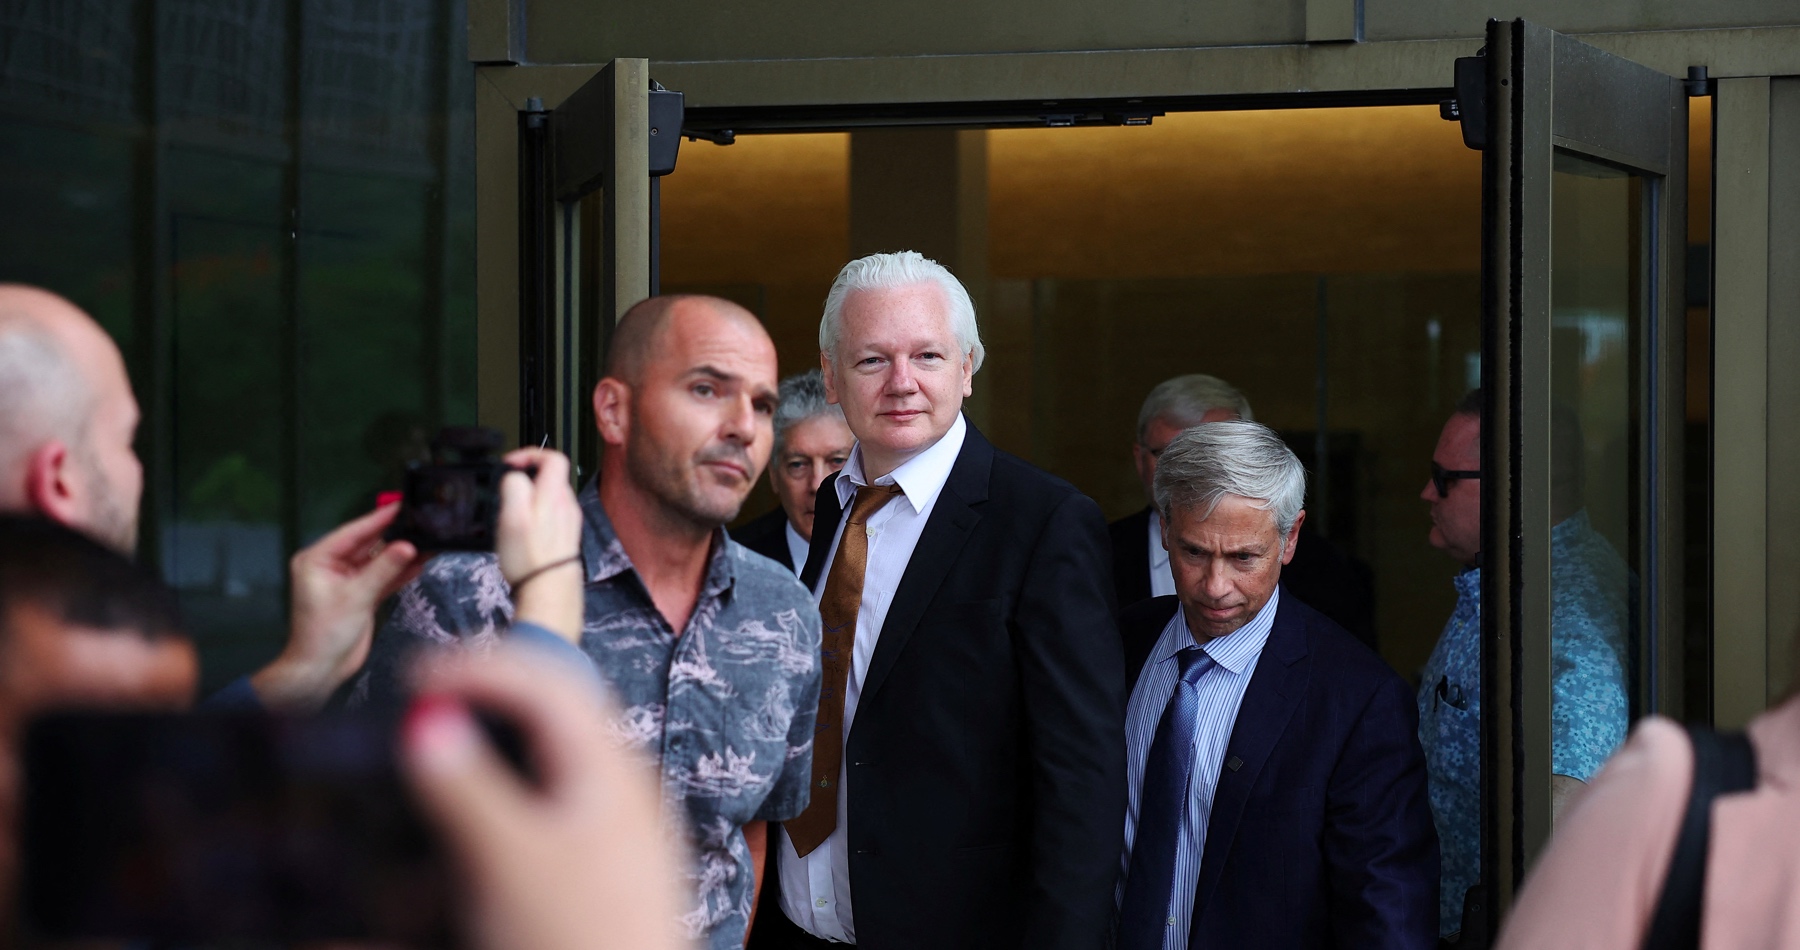 VIDEO: Americký súd rozhodol, že zakladateľ WikiLeaks je voľný. Lietadlo s ním už bezpečne pristálo v Austrálii. Julian Assange sa v rámci dohody o vine a treste priznal ku sprisahaniu s cieľom nezákonne získať a šíriť tajné dokumenty americkej vlády. Jeho právnička pripomenula, že jej klient bol prenasledovaný za zverejnenie vojnových zločinov spáchaných Spojenými štátmi